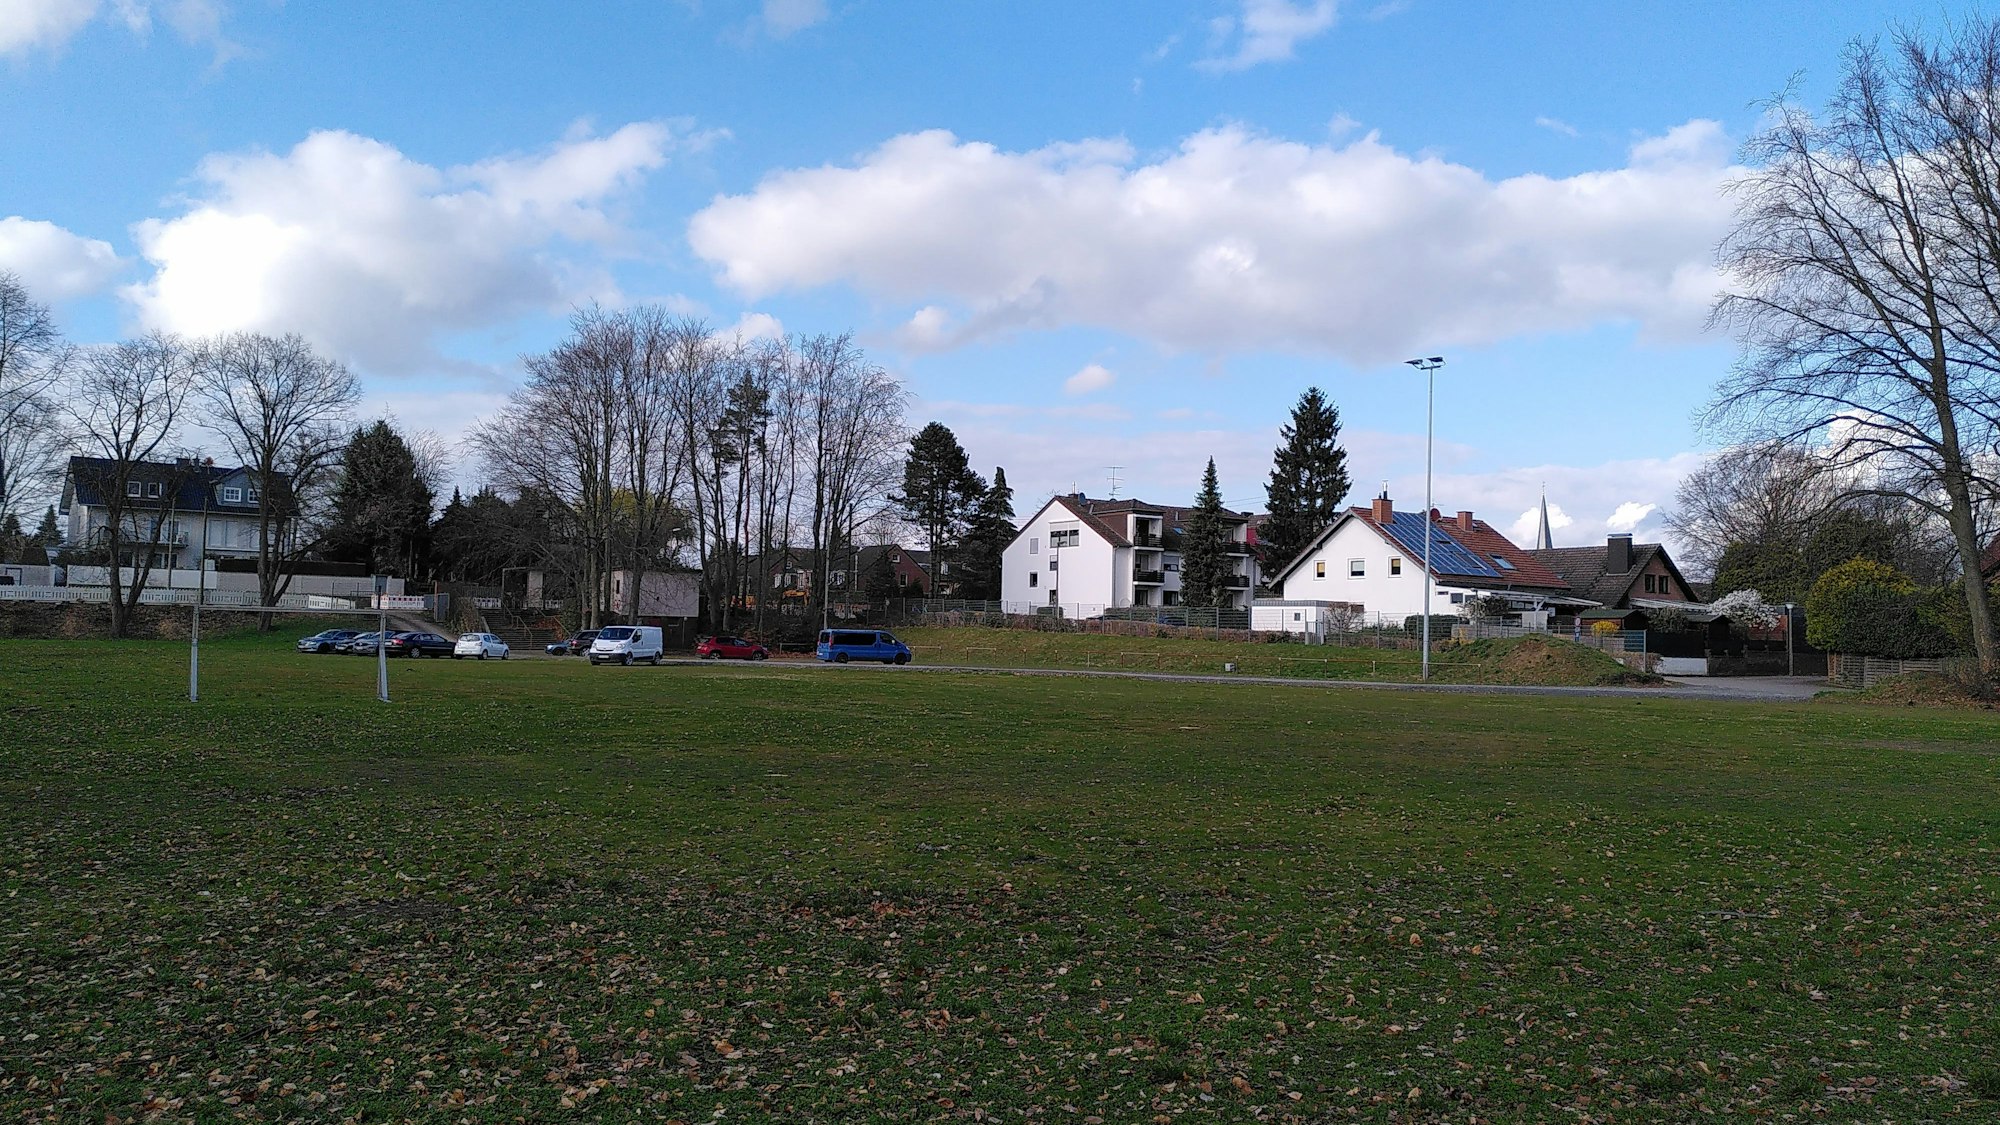 Im Vordergrund ist ein Sportplatz zu sehen, im Hintergrund stehen Wohnhäuser.